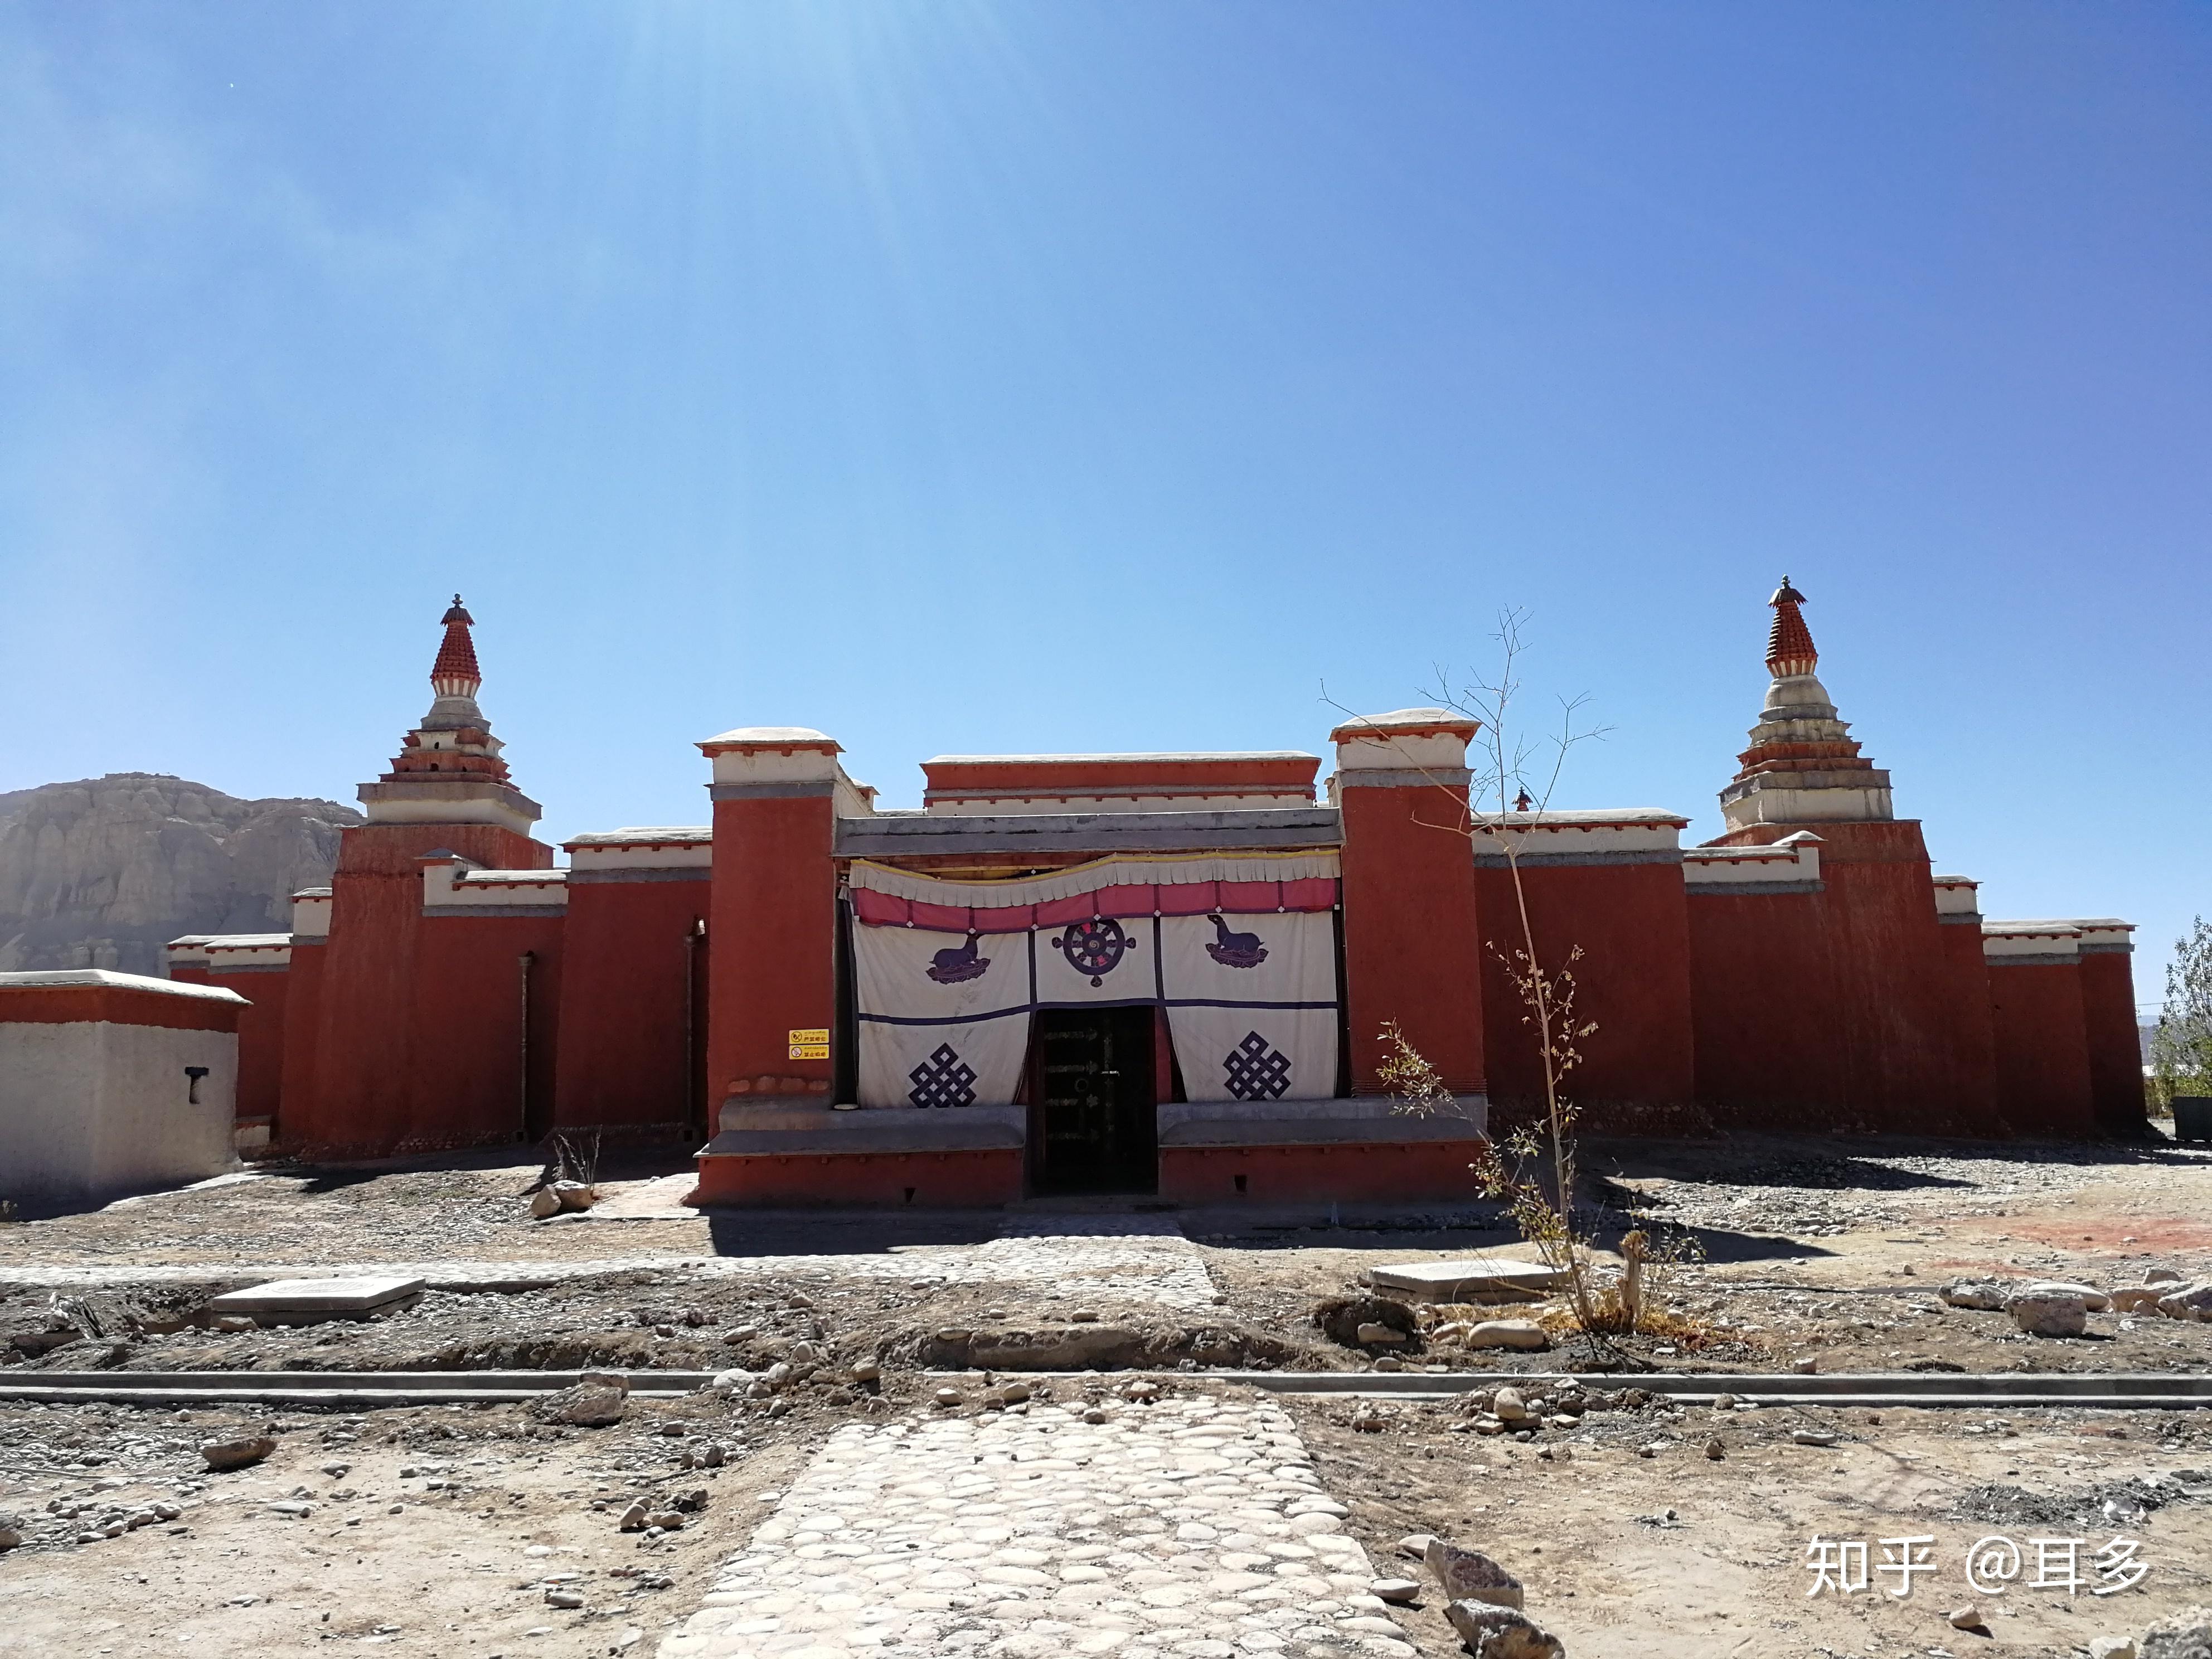 洛卓沃龙寺位于西藏山南洛扎县色乡……